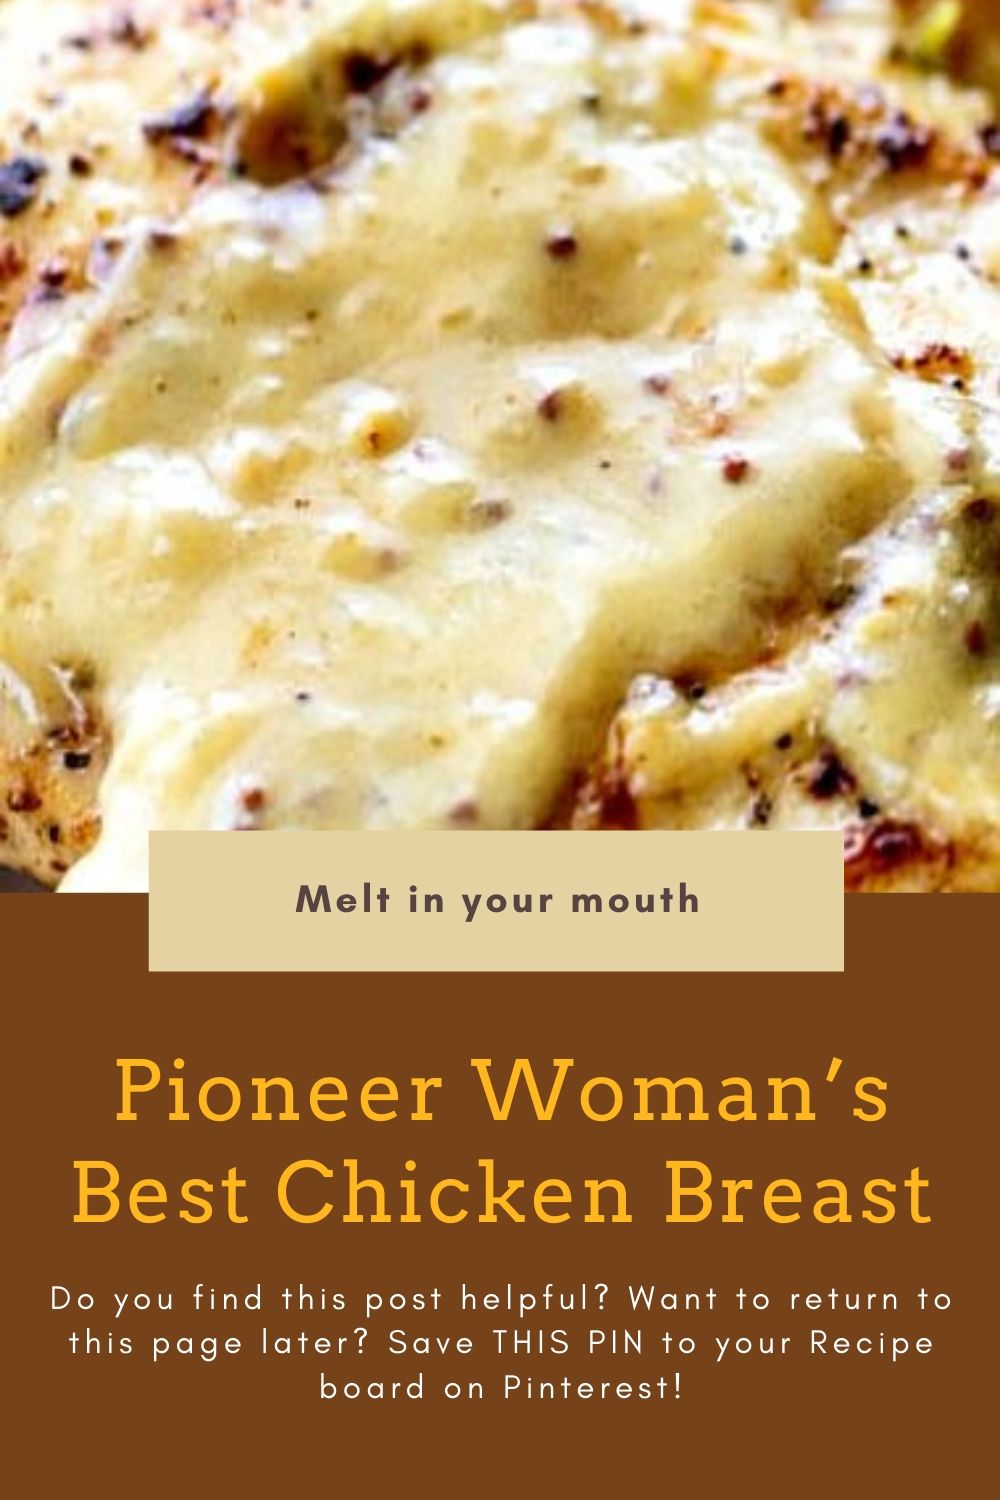 Pioneer Woman's Best Chicken Breast - Pinnerfood